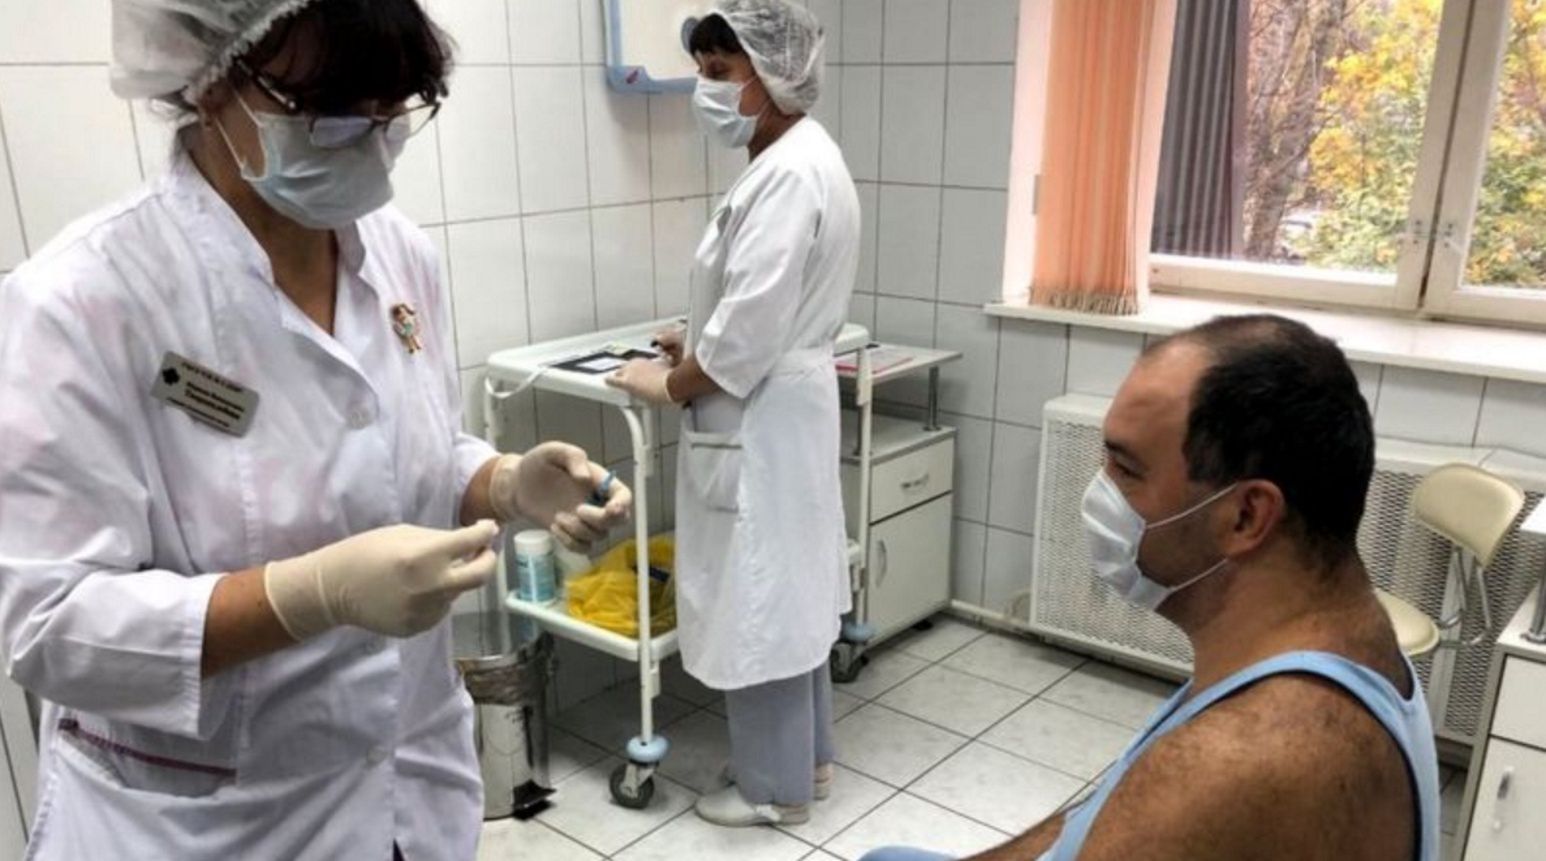 Rosyjska szczepionka na COVID-19. Niepokojące doniesienia z Kraju Ałtajskiego